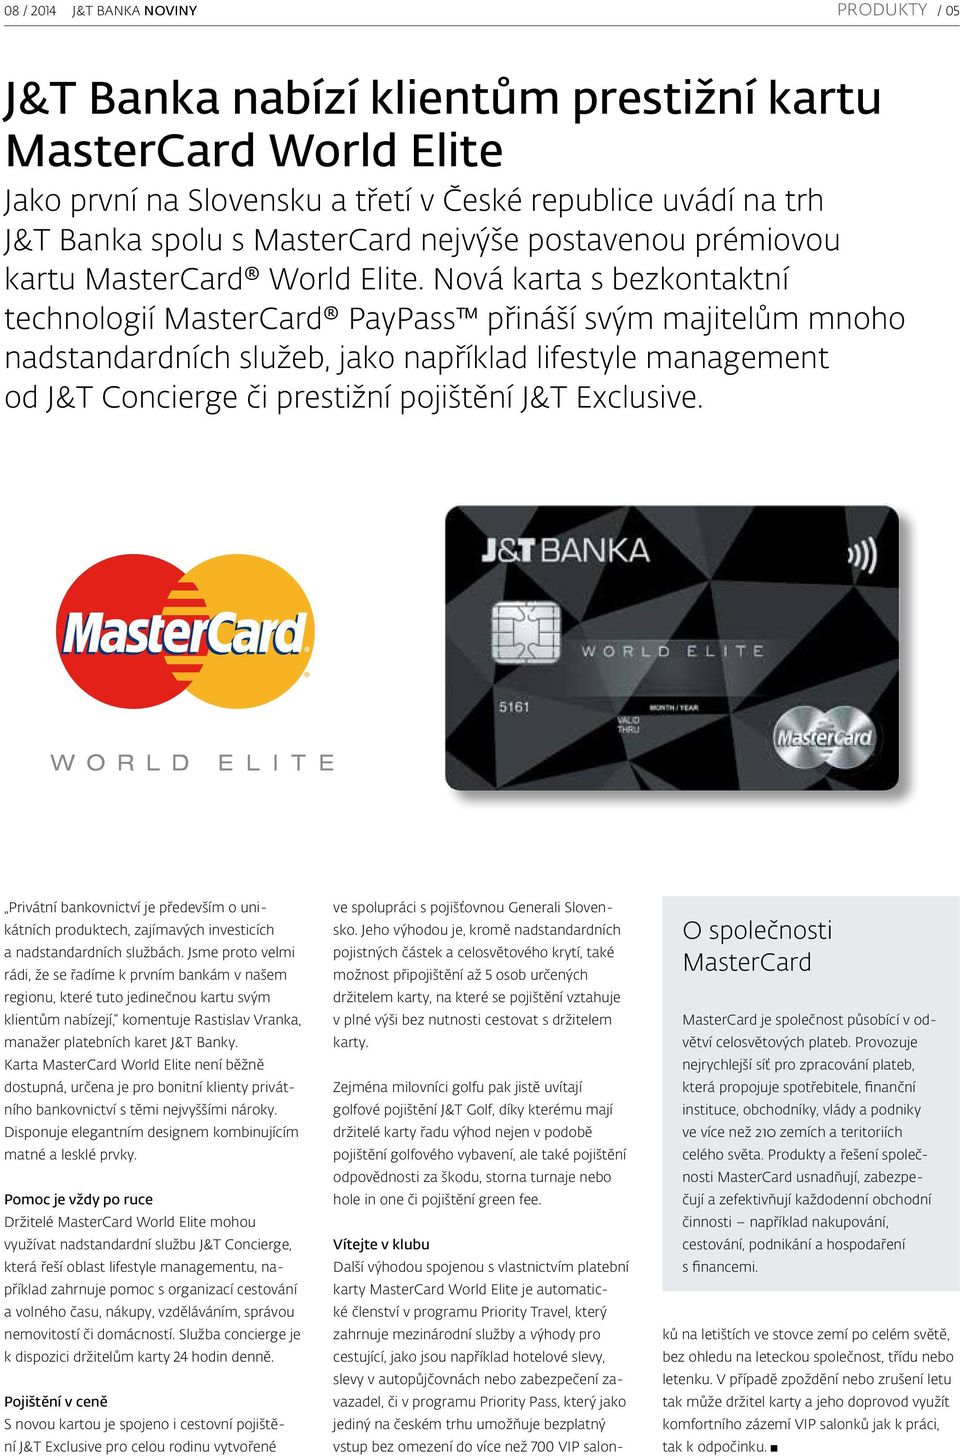 Nová karta s bezkontaktní technologií MasterCard PayPass přináší svým majitelům mnoho nadstandardních služeb, jako například lifestyle management od J&T Concierge či prestižní pojištění J&T Exclusive.